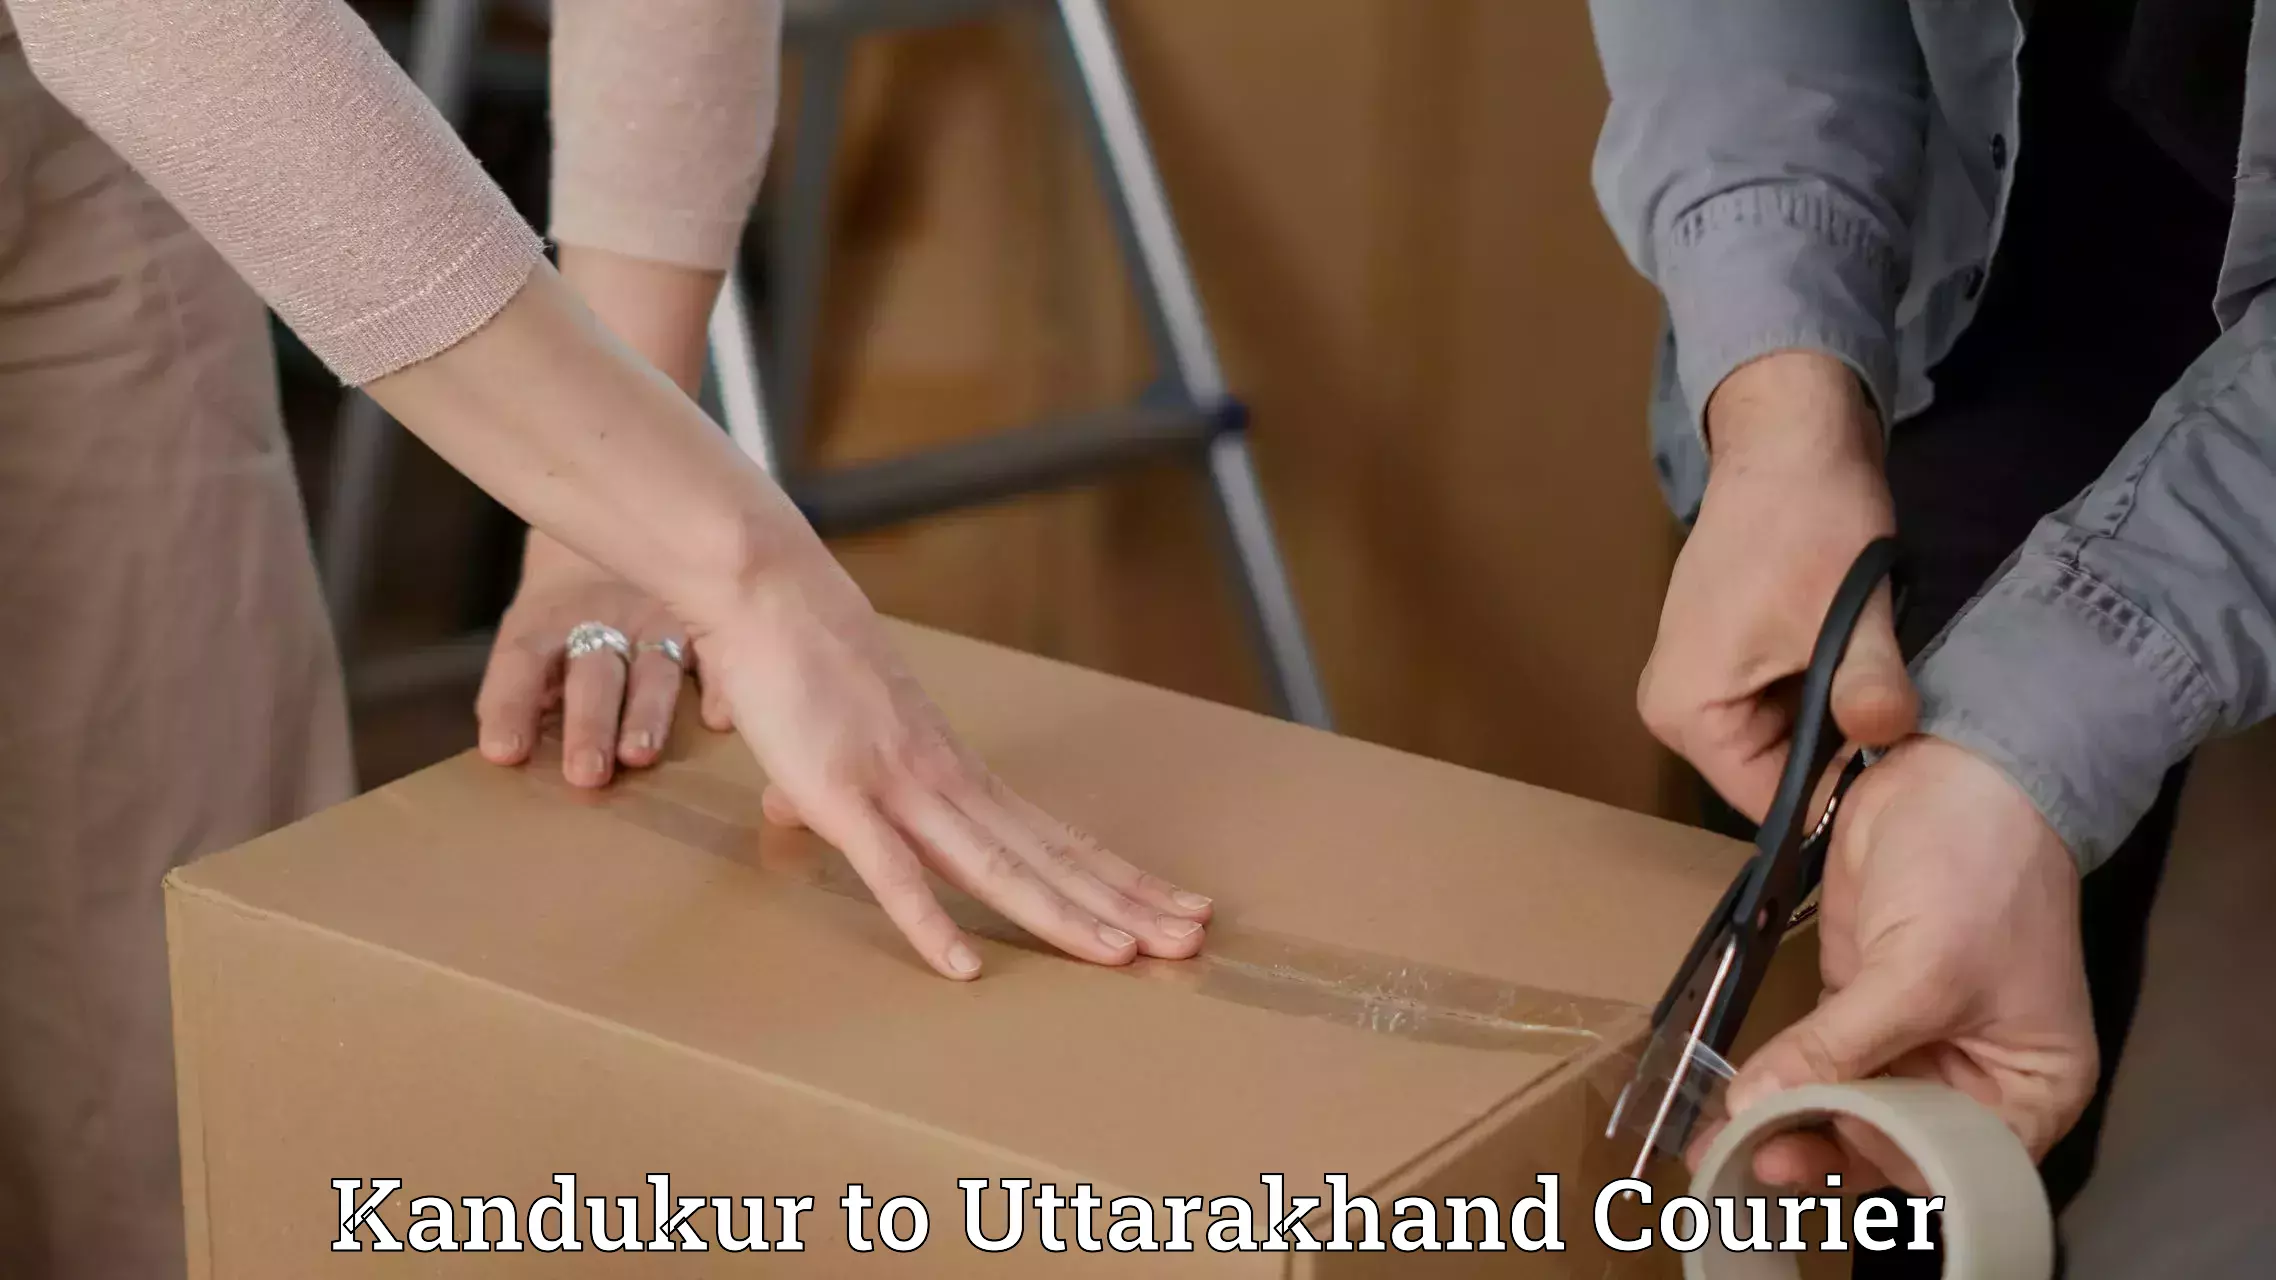 Subscription-based courier Kandukur to Uttarakhand